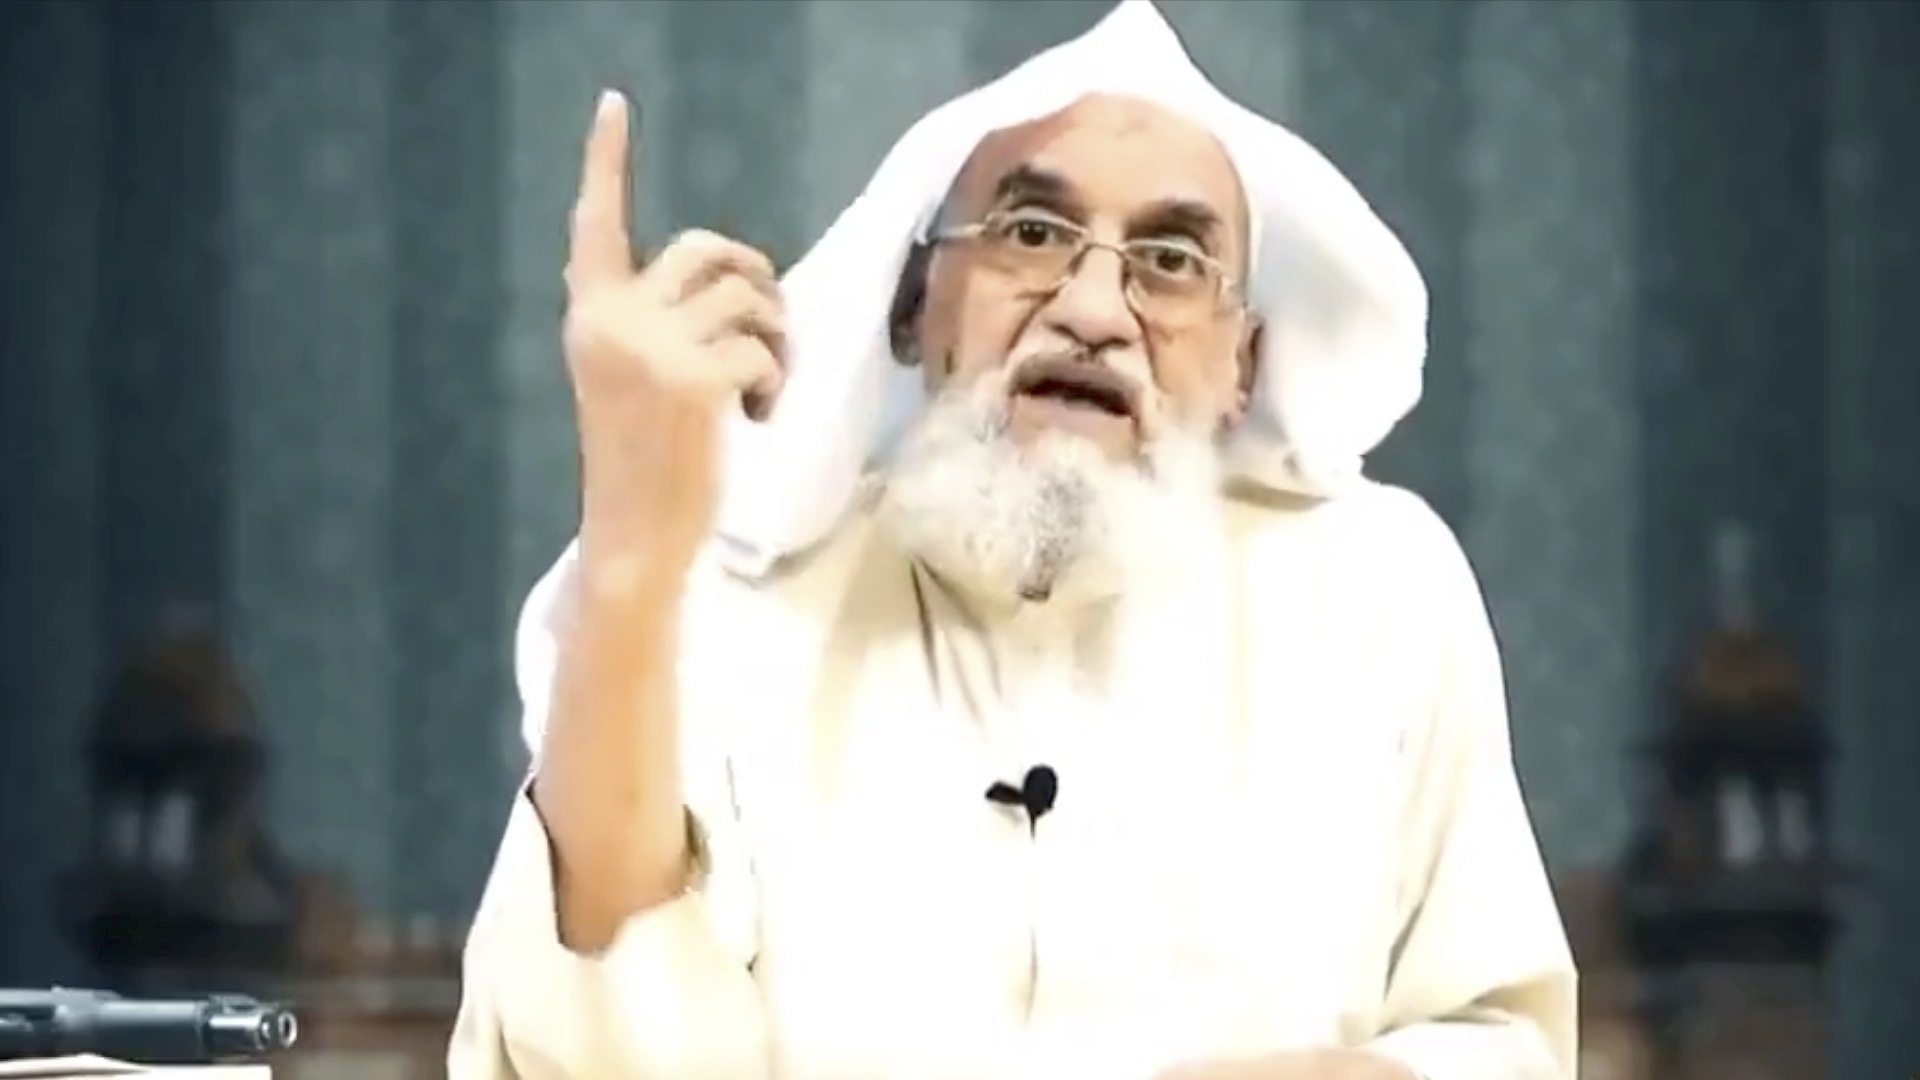 EEUU alerta a sus ciudadanos ante posibles represalias tras la muerte de Al Zawahiri